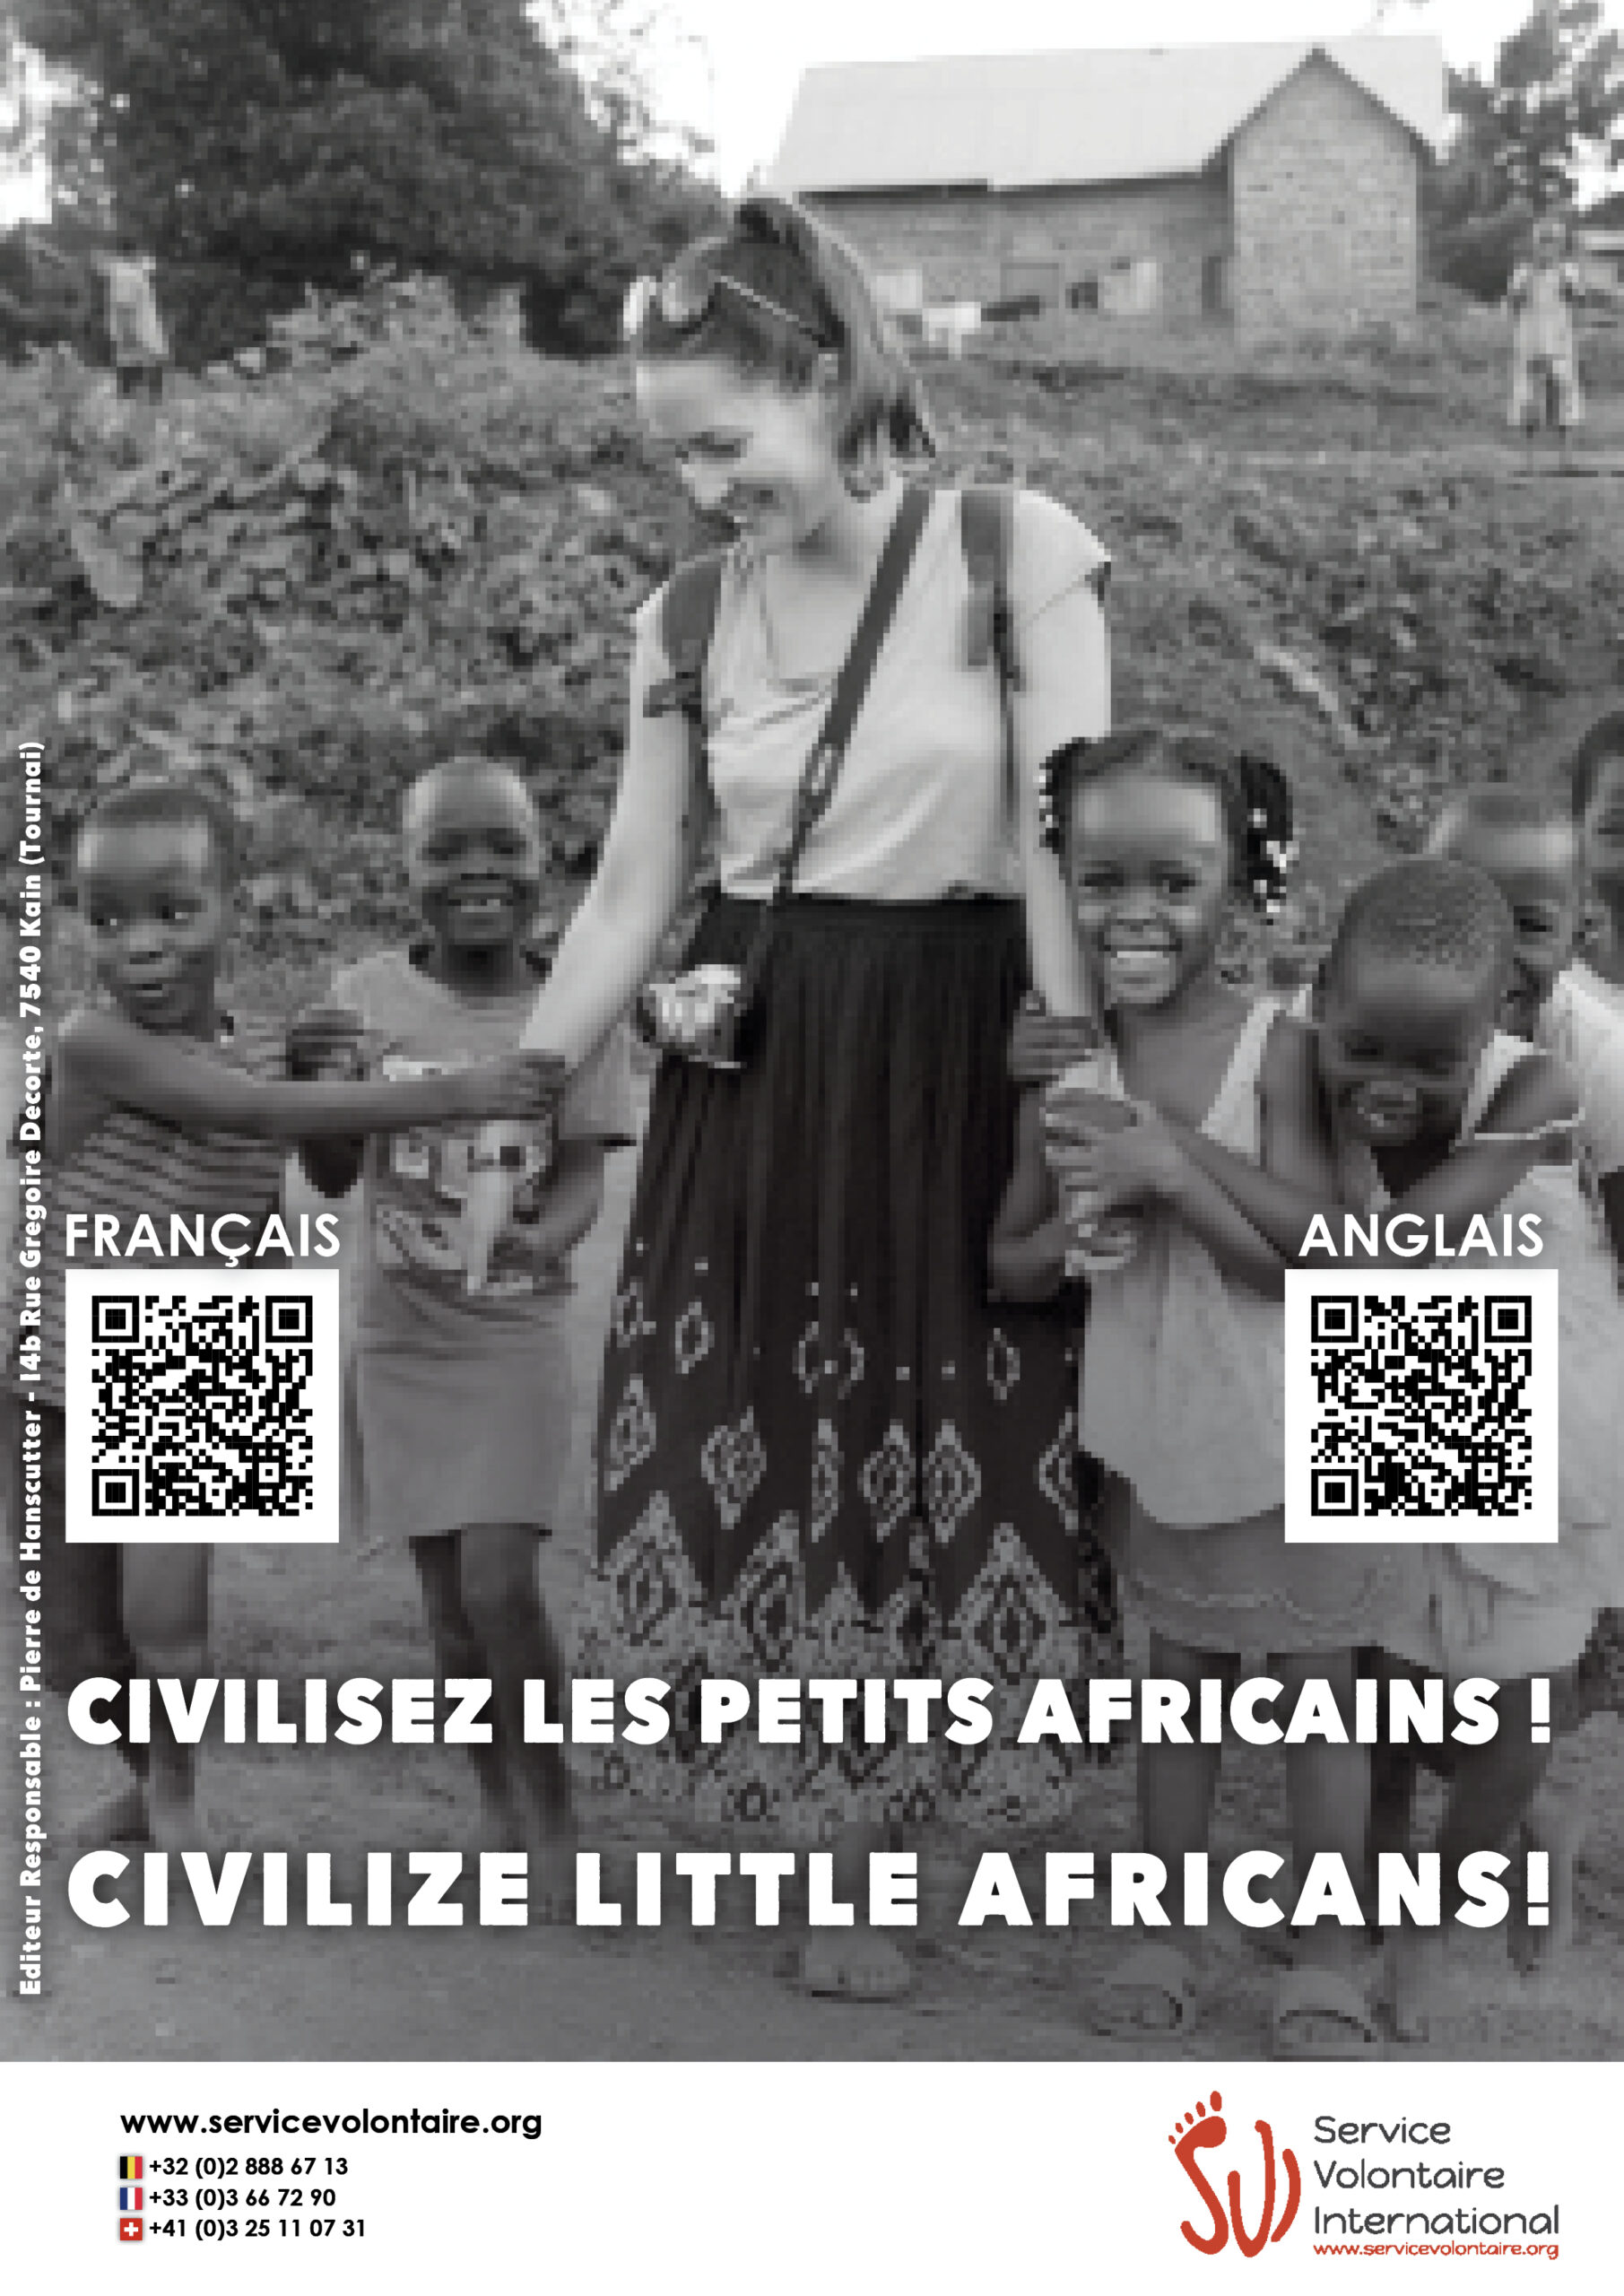 Shock сampaign: Civilize Little africans!